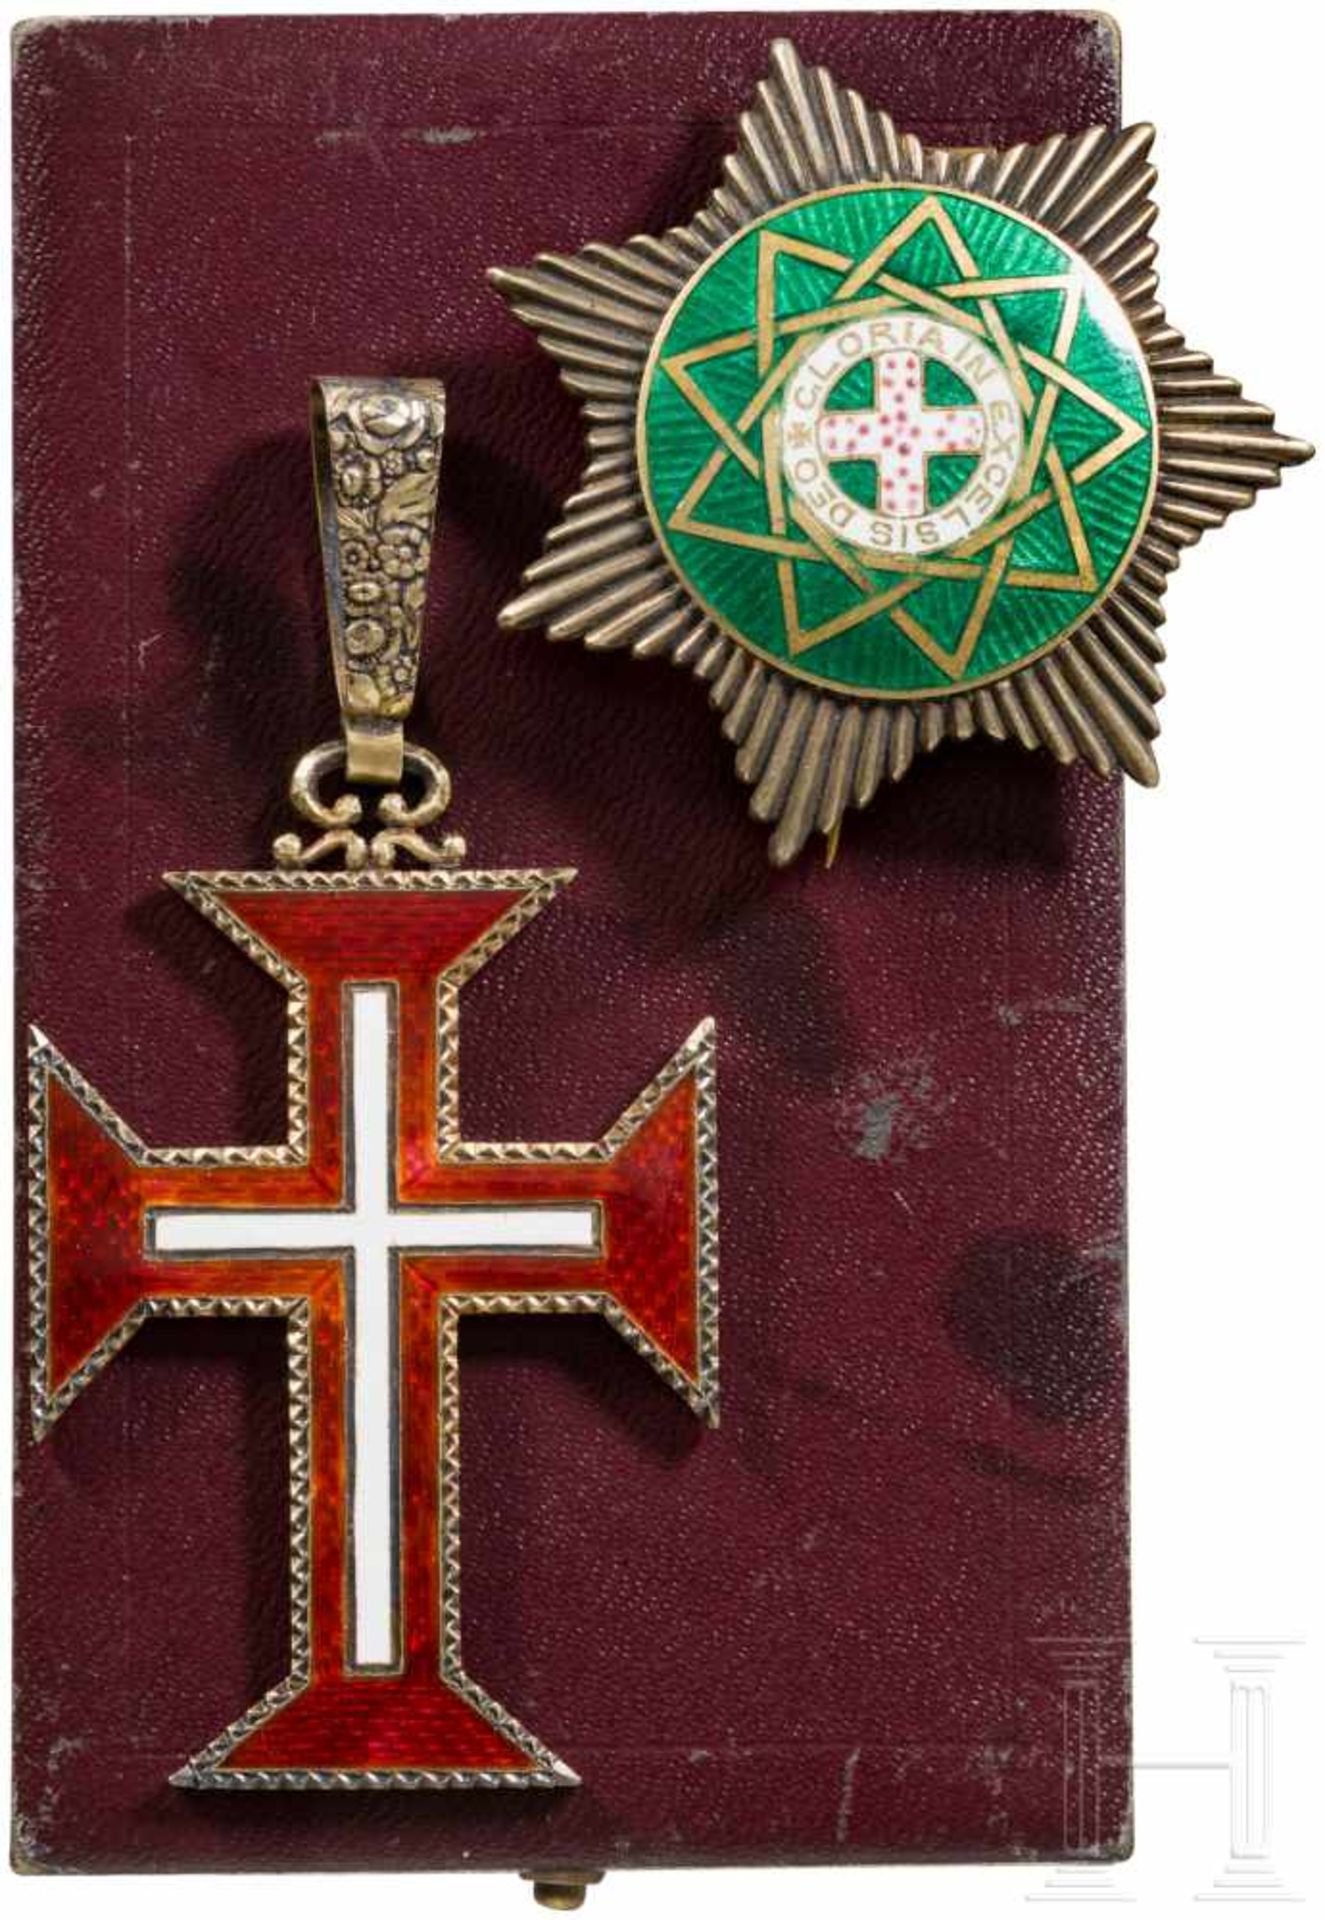 Two awards, Portugal and Freemason, 20th centuryRot und weiß emailliertes Kreuz des